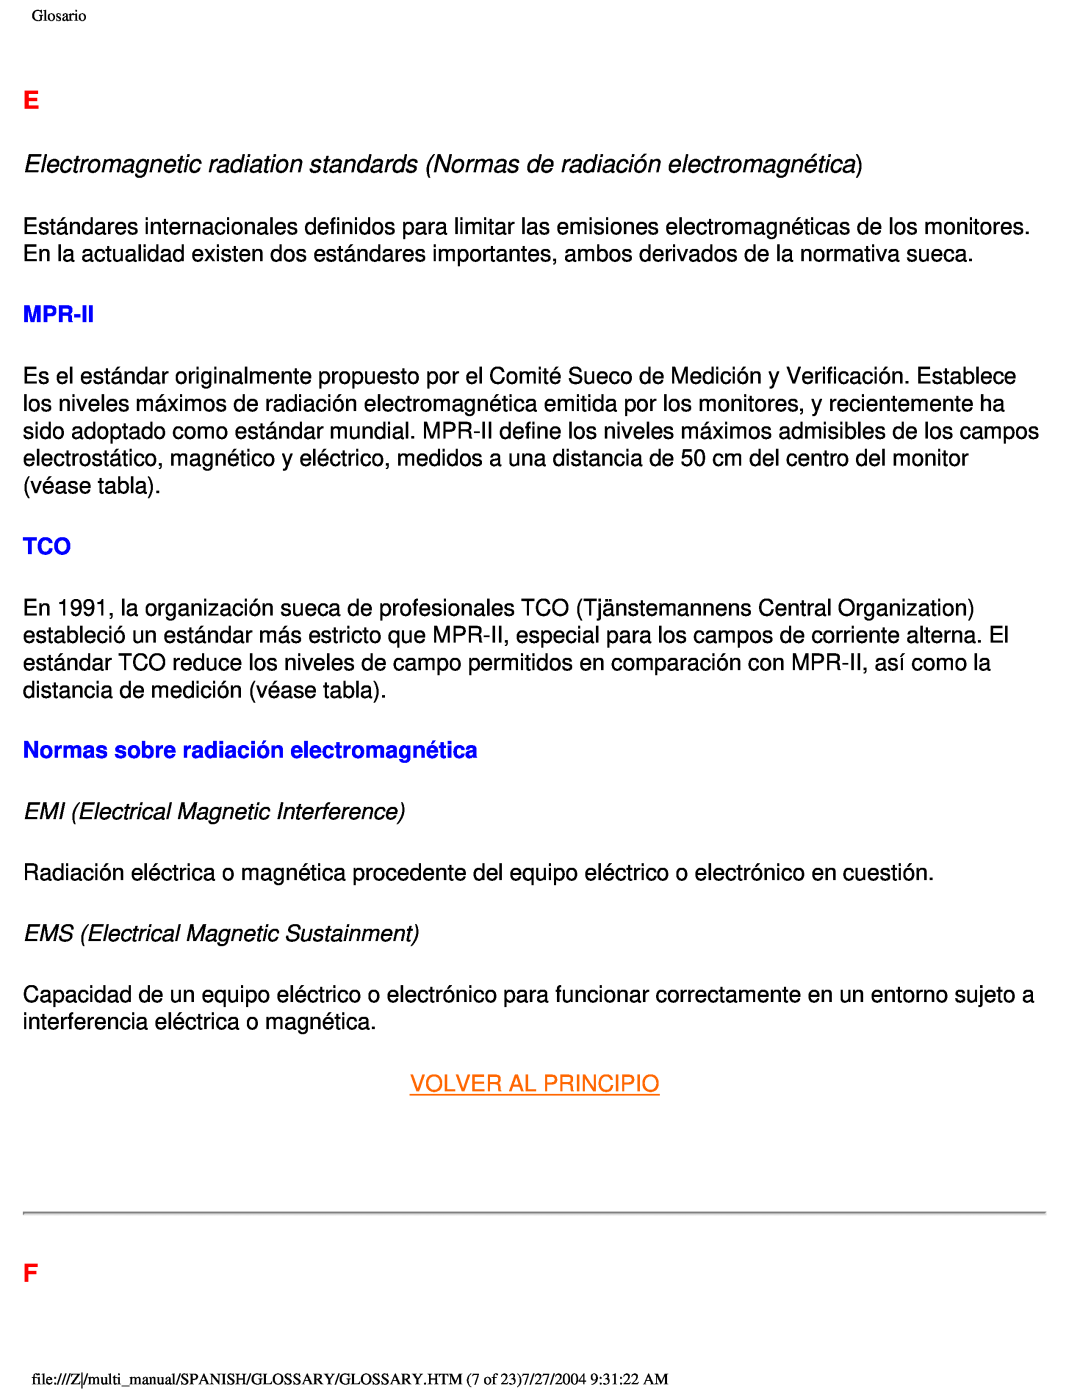 Philips 107B Mpr-Ii, Normas sobre radiación electromagnética, EMI Electrical Magnetic Interference, Volver Al Principio 